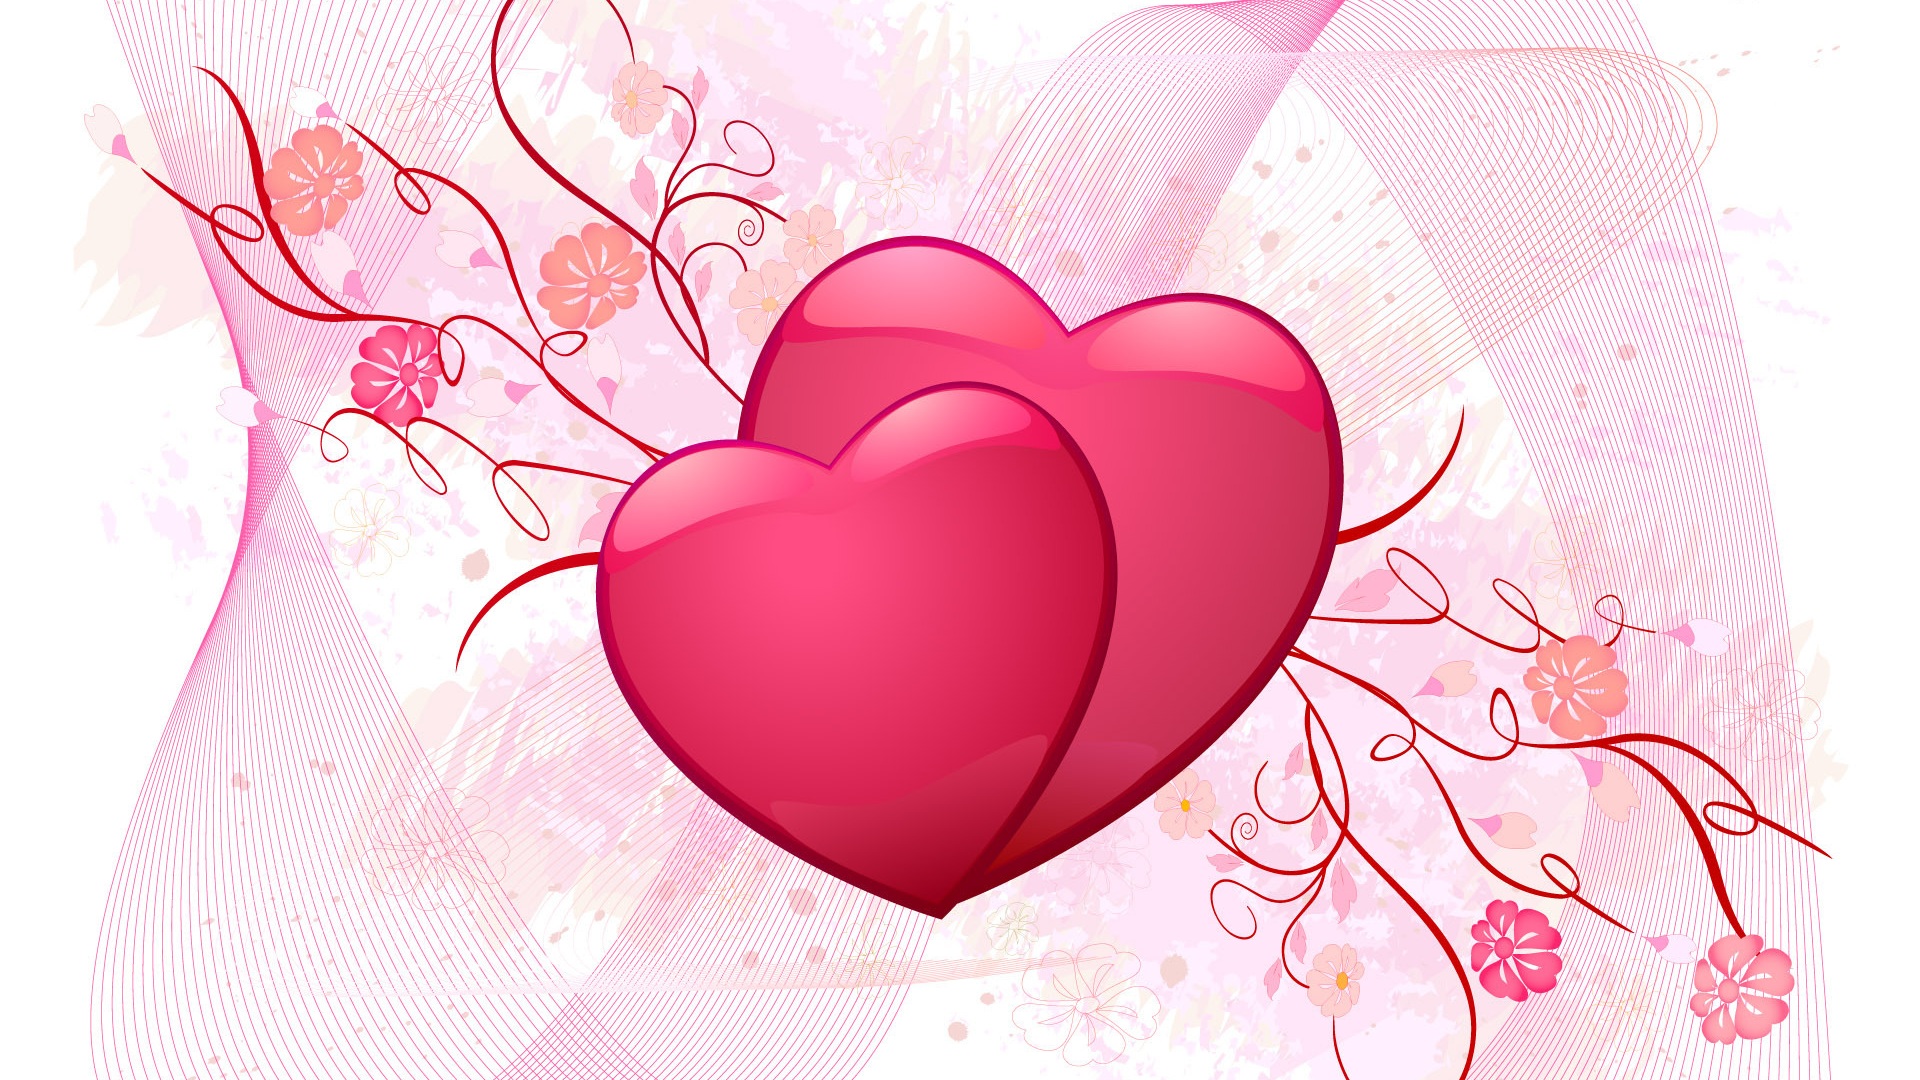 valentines day wallpaper,heart,love,pink,valentine's day,organ